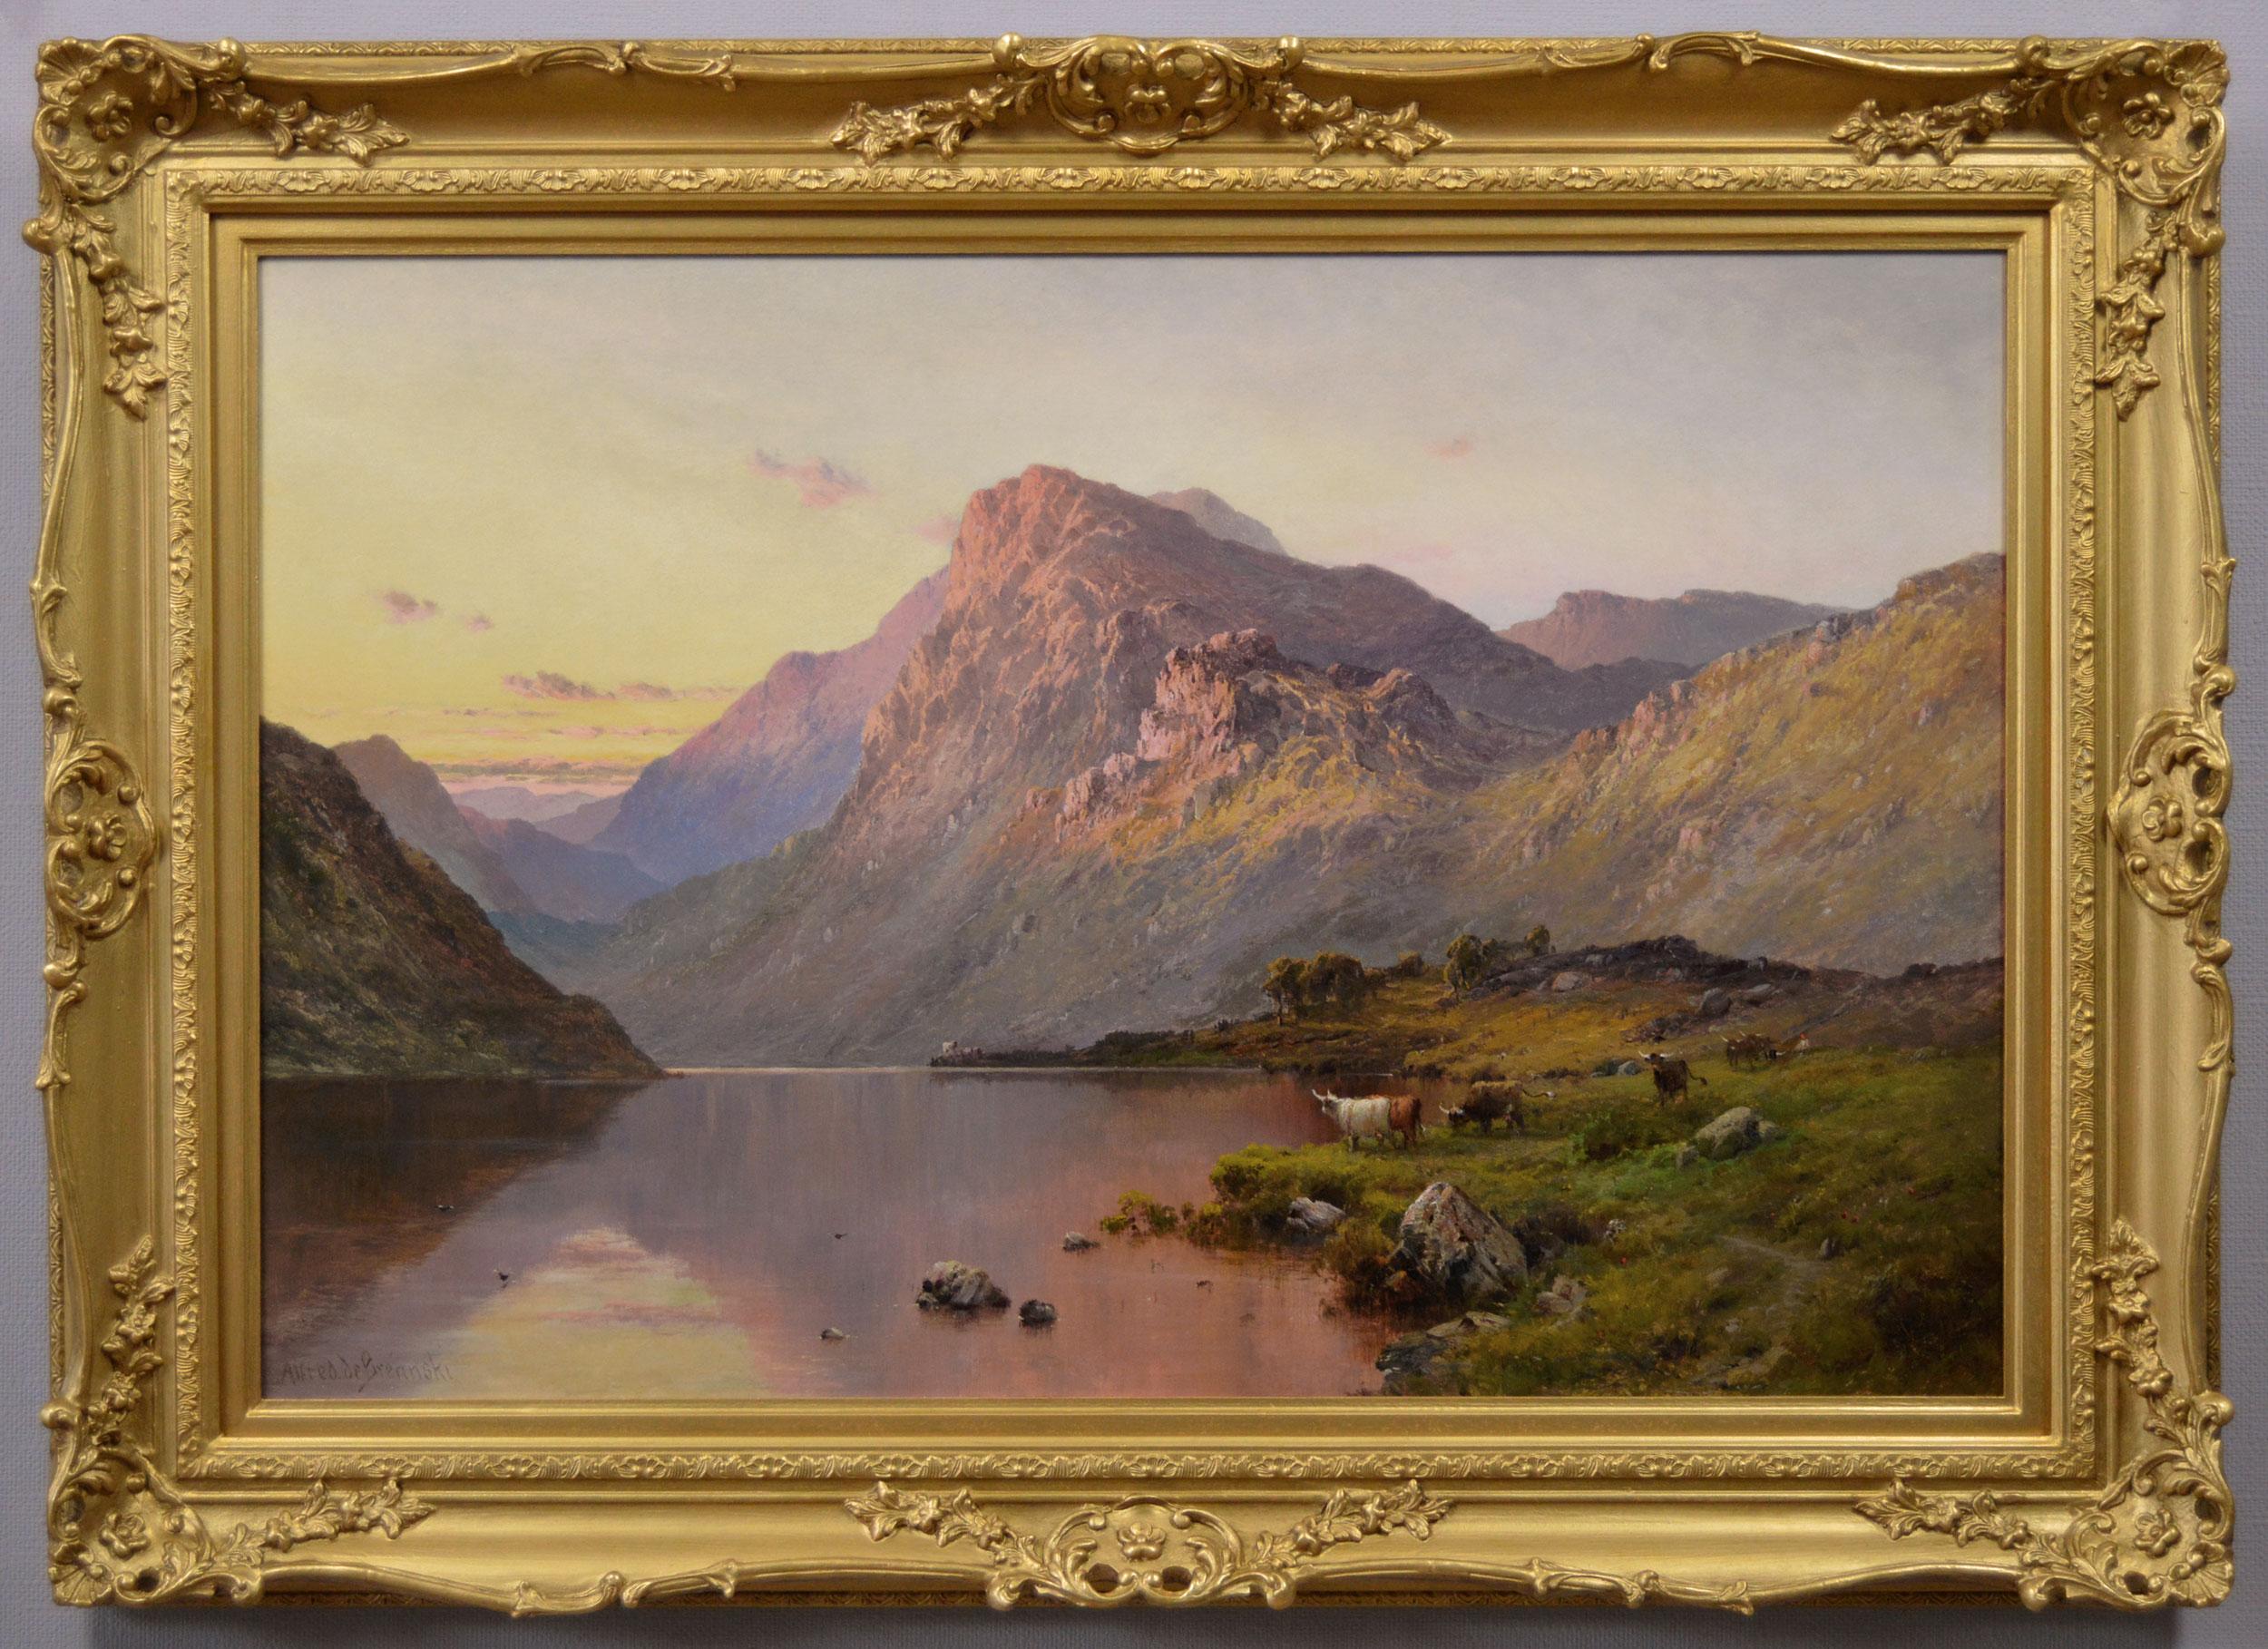 Landscape Painting Alfred de Breanski Sr. - Peinture à l'huile des Highlands écossais du 19e siècle représentant le Loch Lubnaig